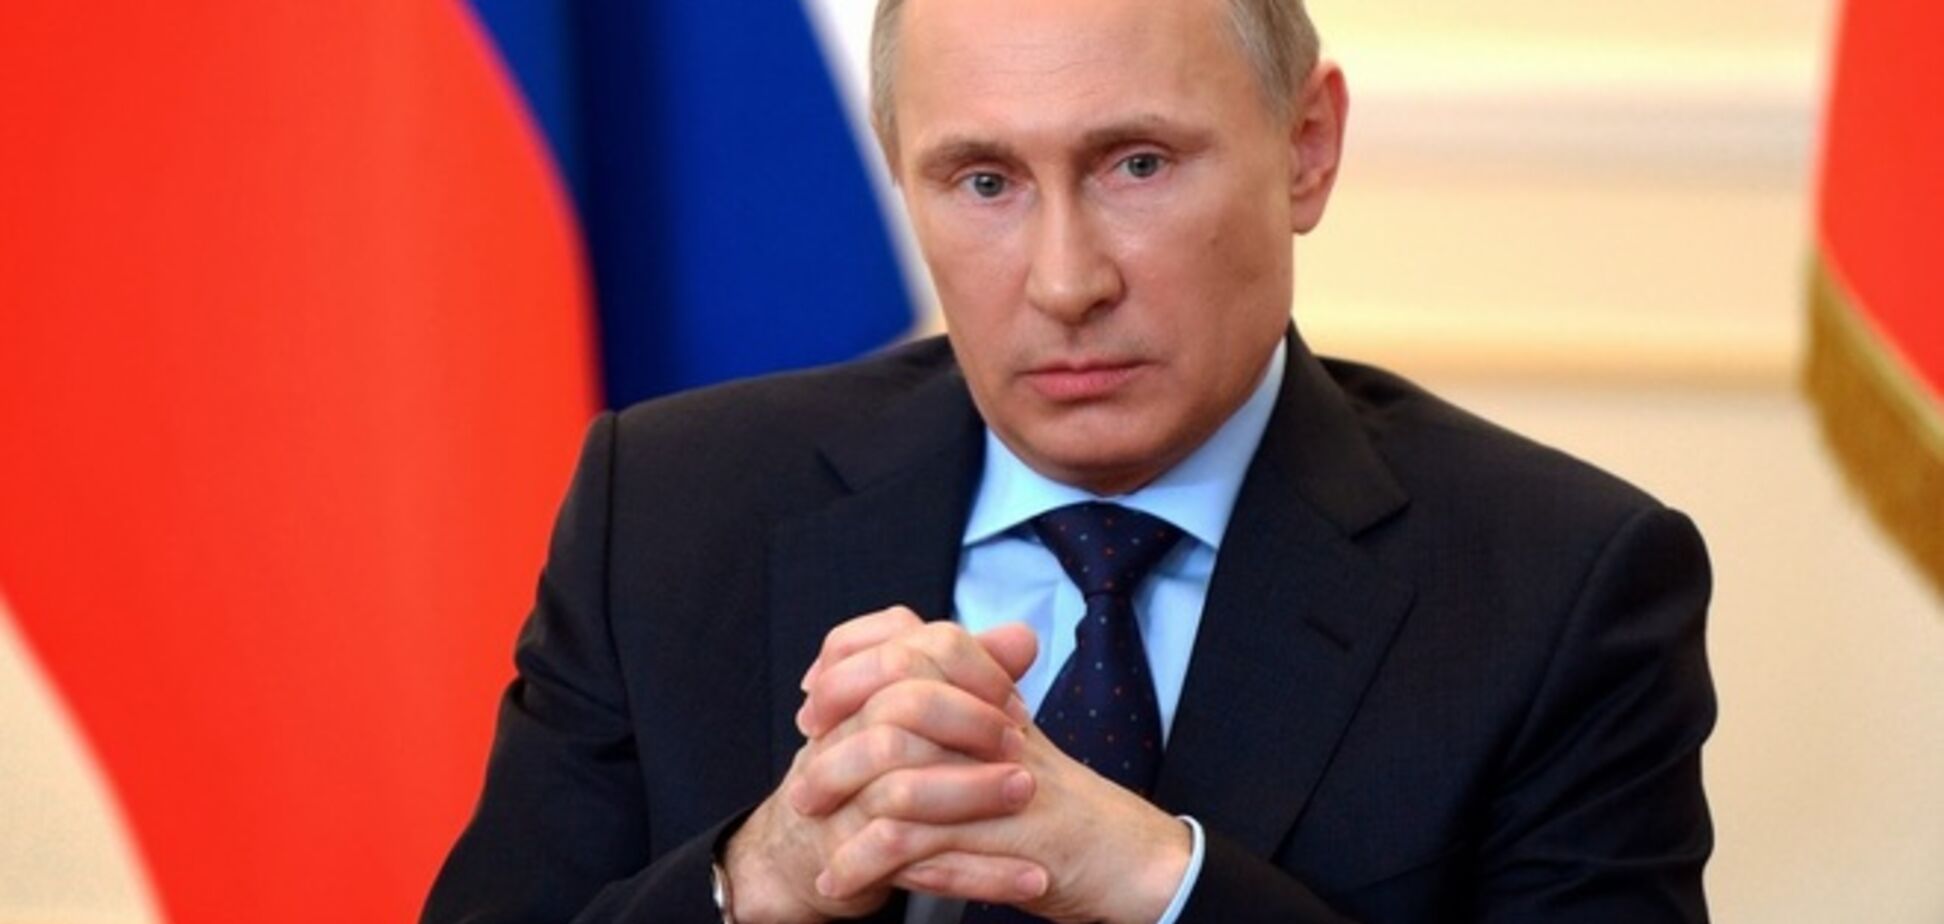 Опять всех переиграл: Путина поздравили с 'успешным' построением русского мира